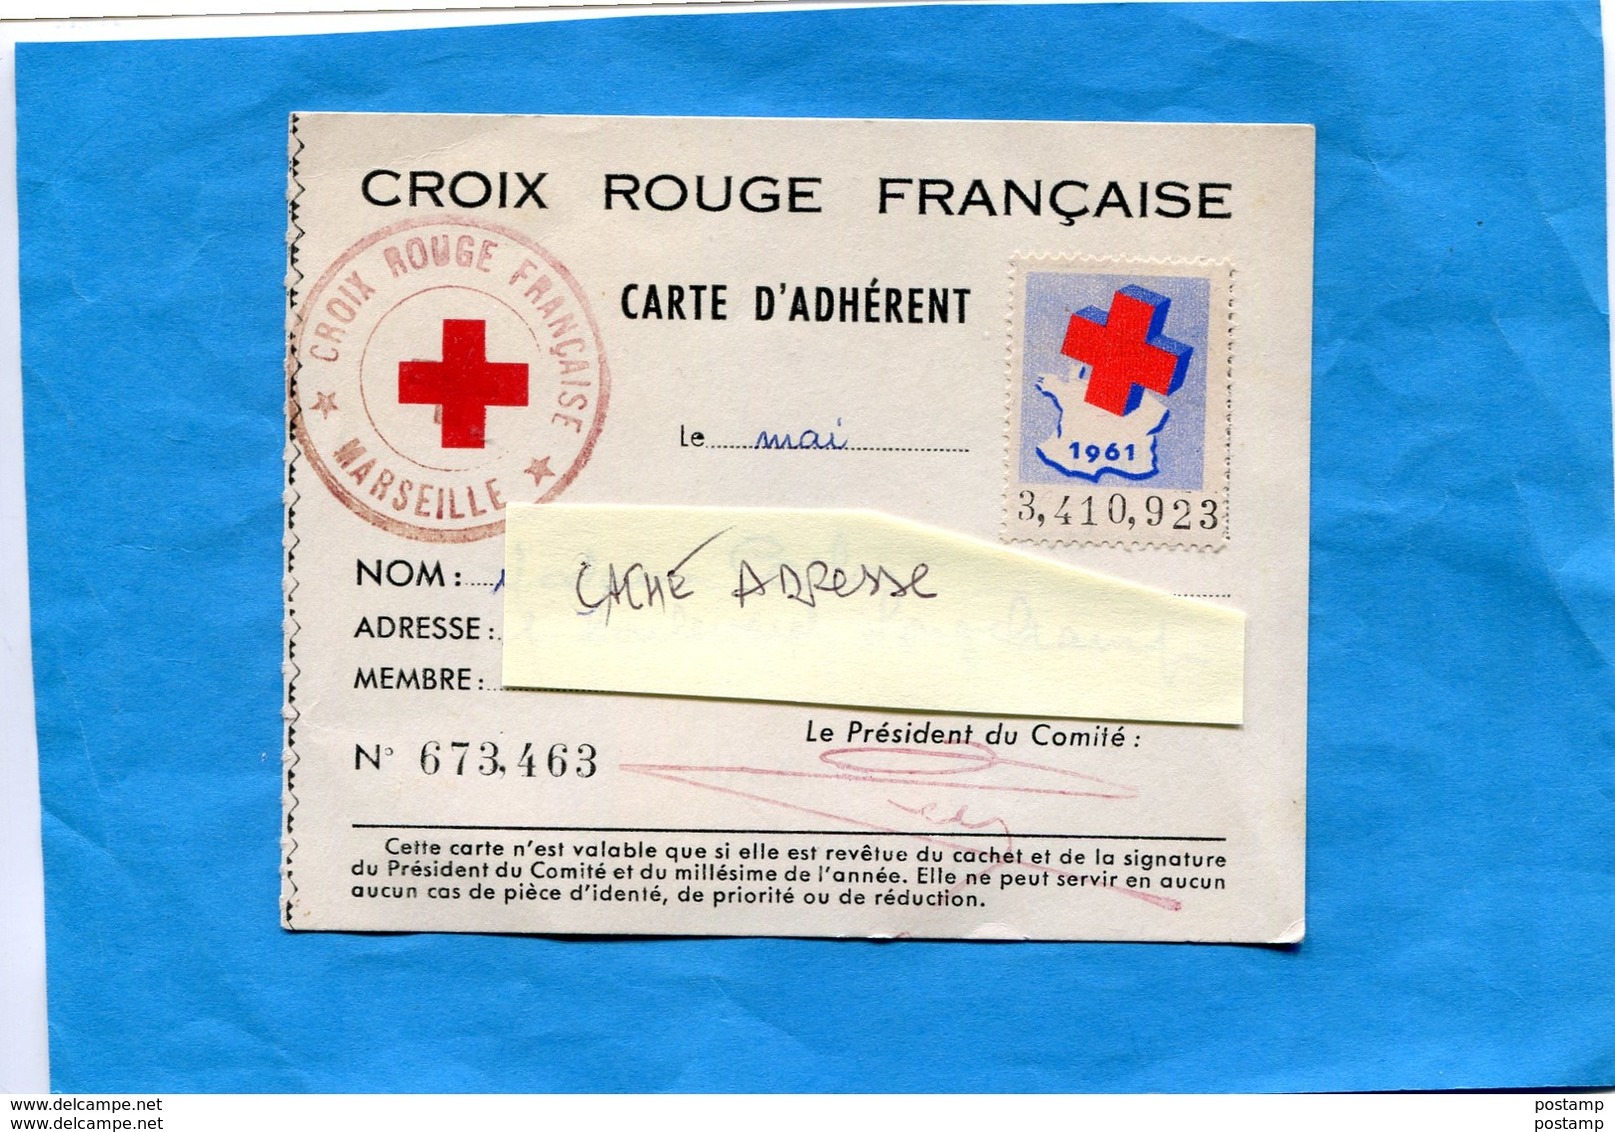 Croix Rouge -Carte D'adhérent Vignette 1961-  Cachet -plus Au Dos Vignette Internationale 3Frs - Red Cross